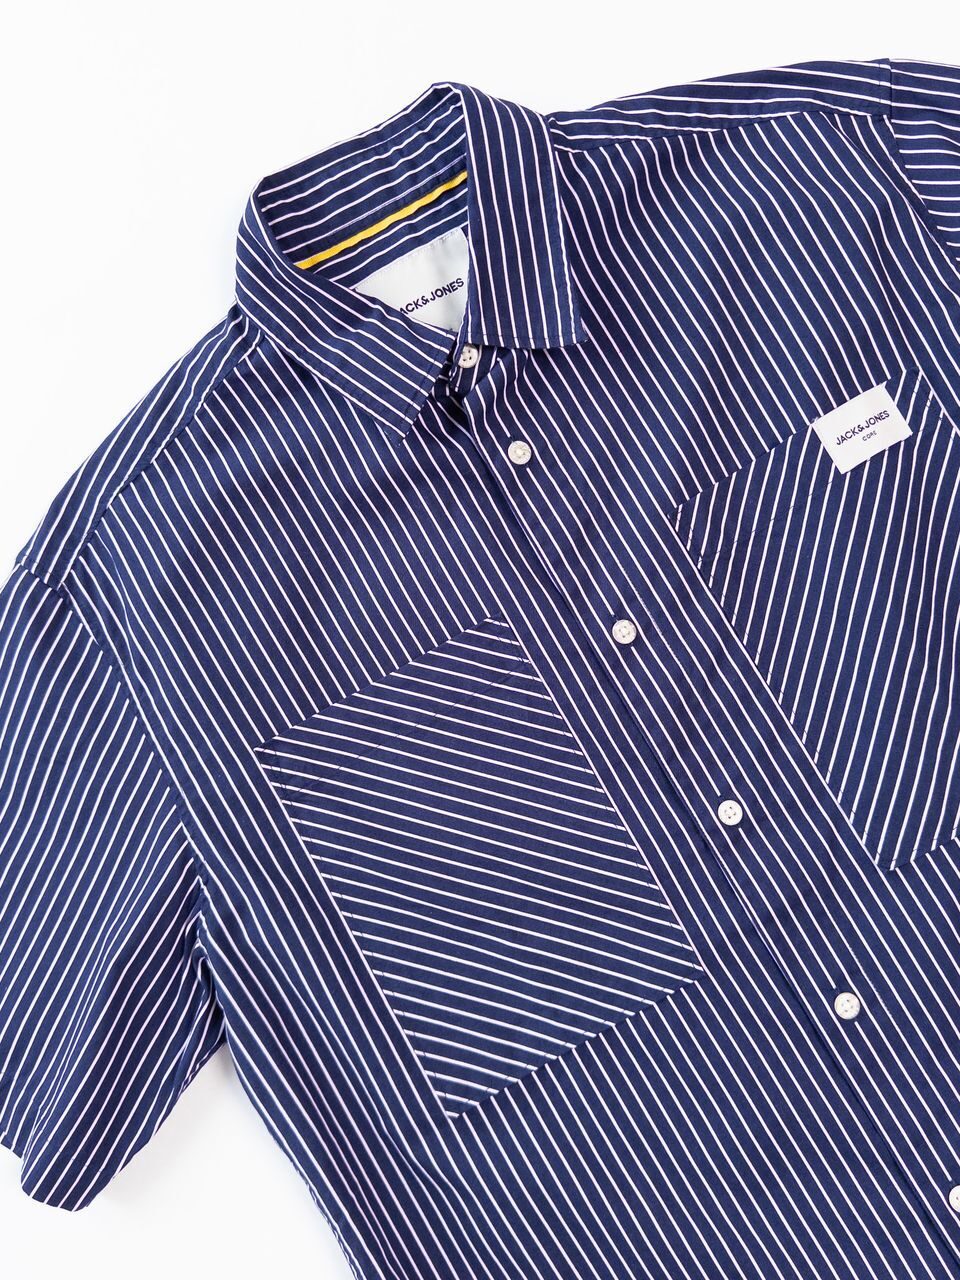 Рубашка мужская на пуговицах цвет темно-синий/полоска размер М Jack&Jones